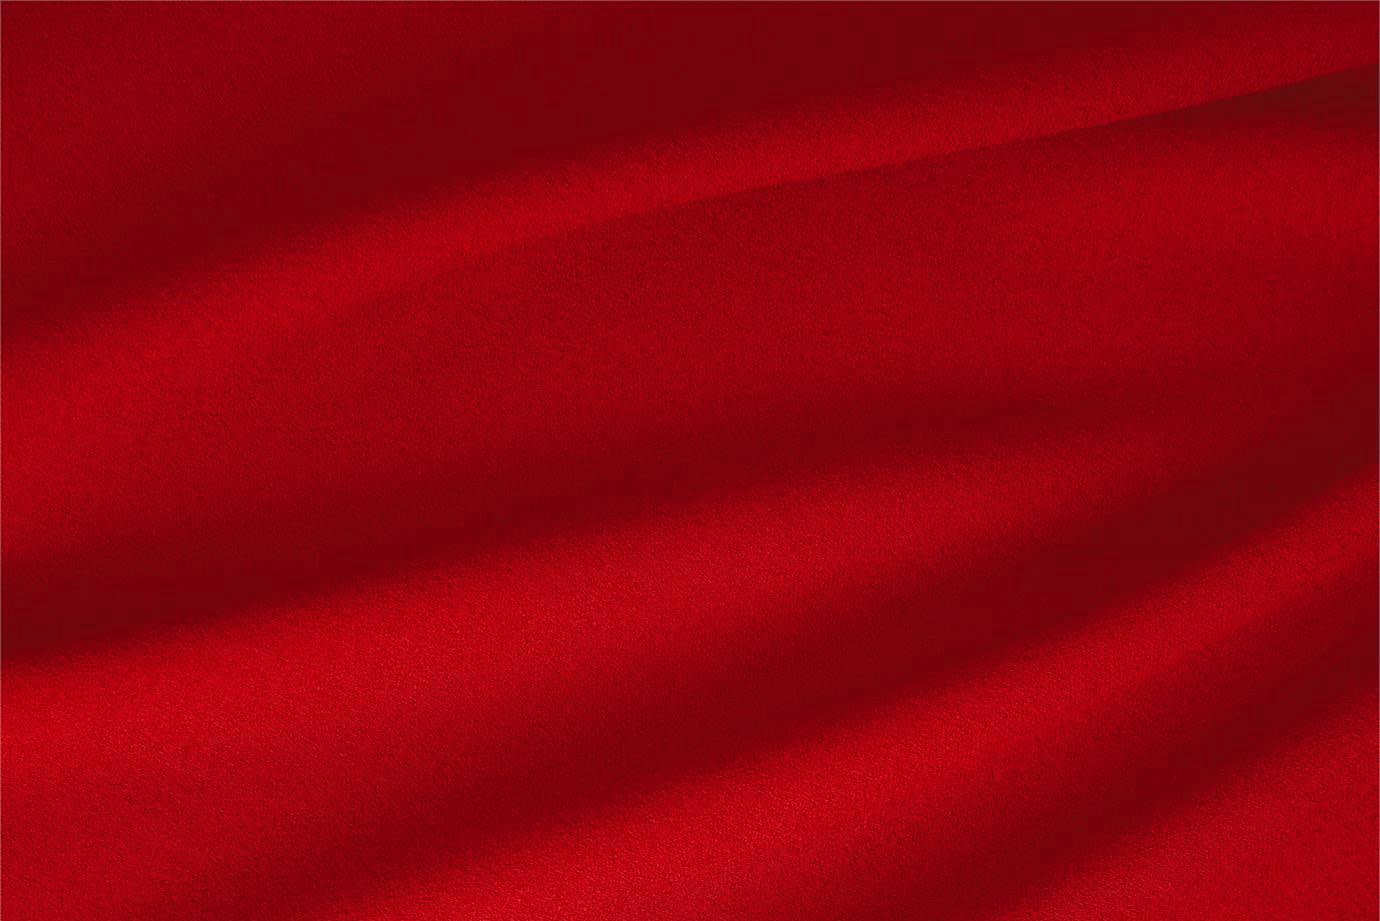 Tessuto Lana Stretch Rosso Fuoco in Lana, Poliestere, Stretch per Abbigliamento TC000172